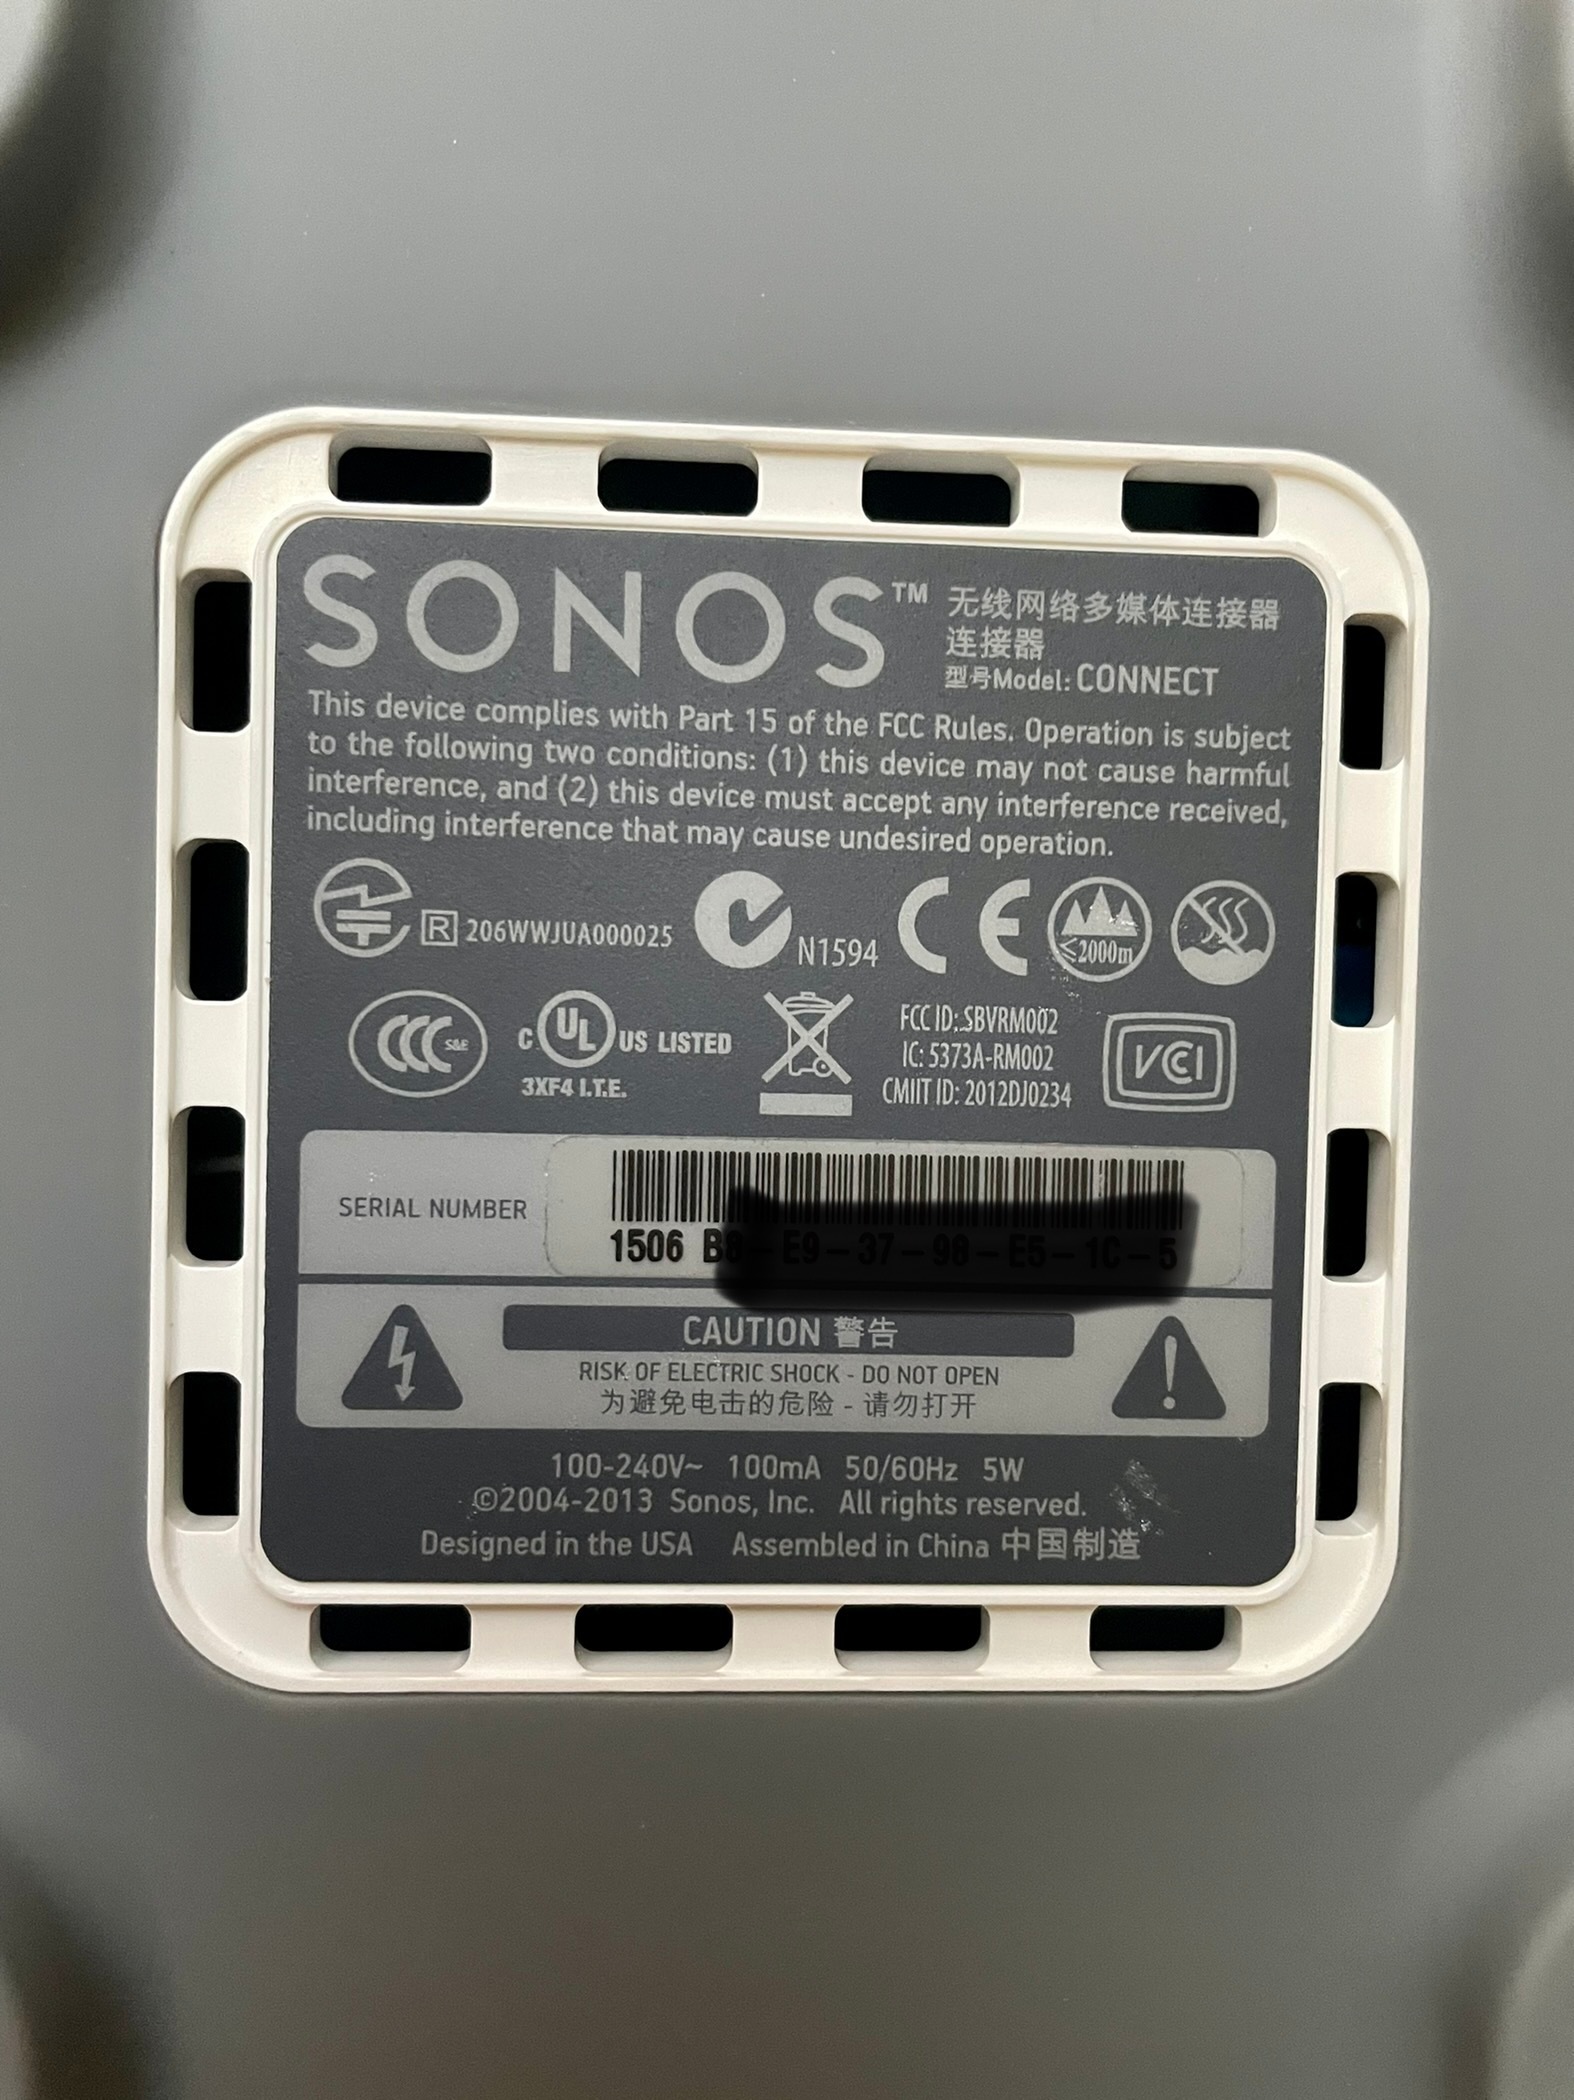 Connect vs Connect S15? | Sonos Community